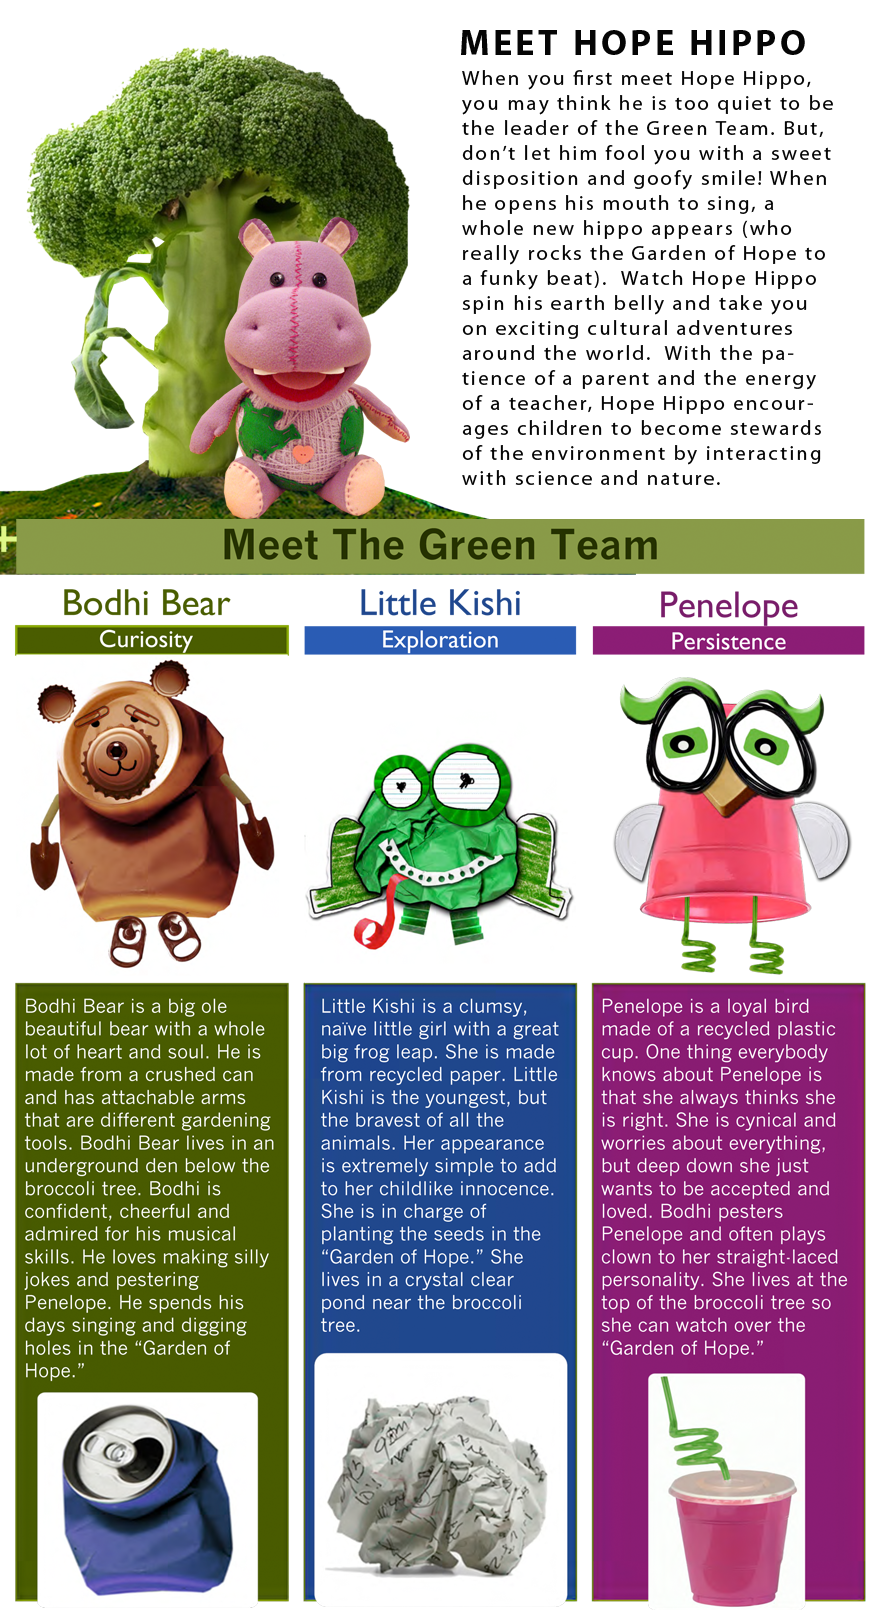 Meet the Green Team